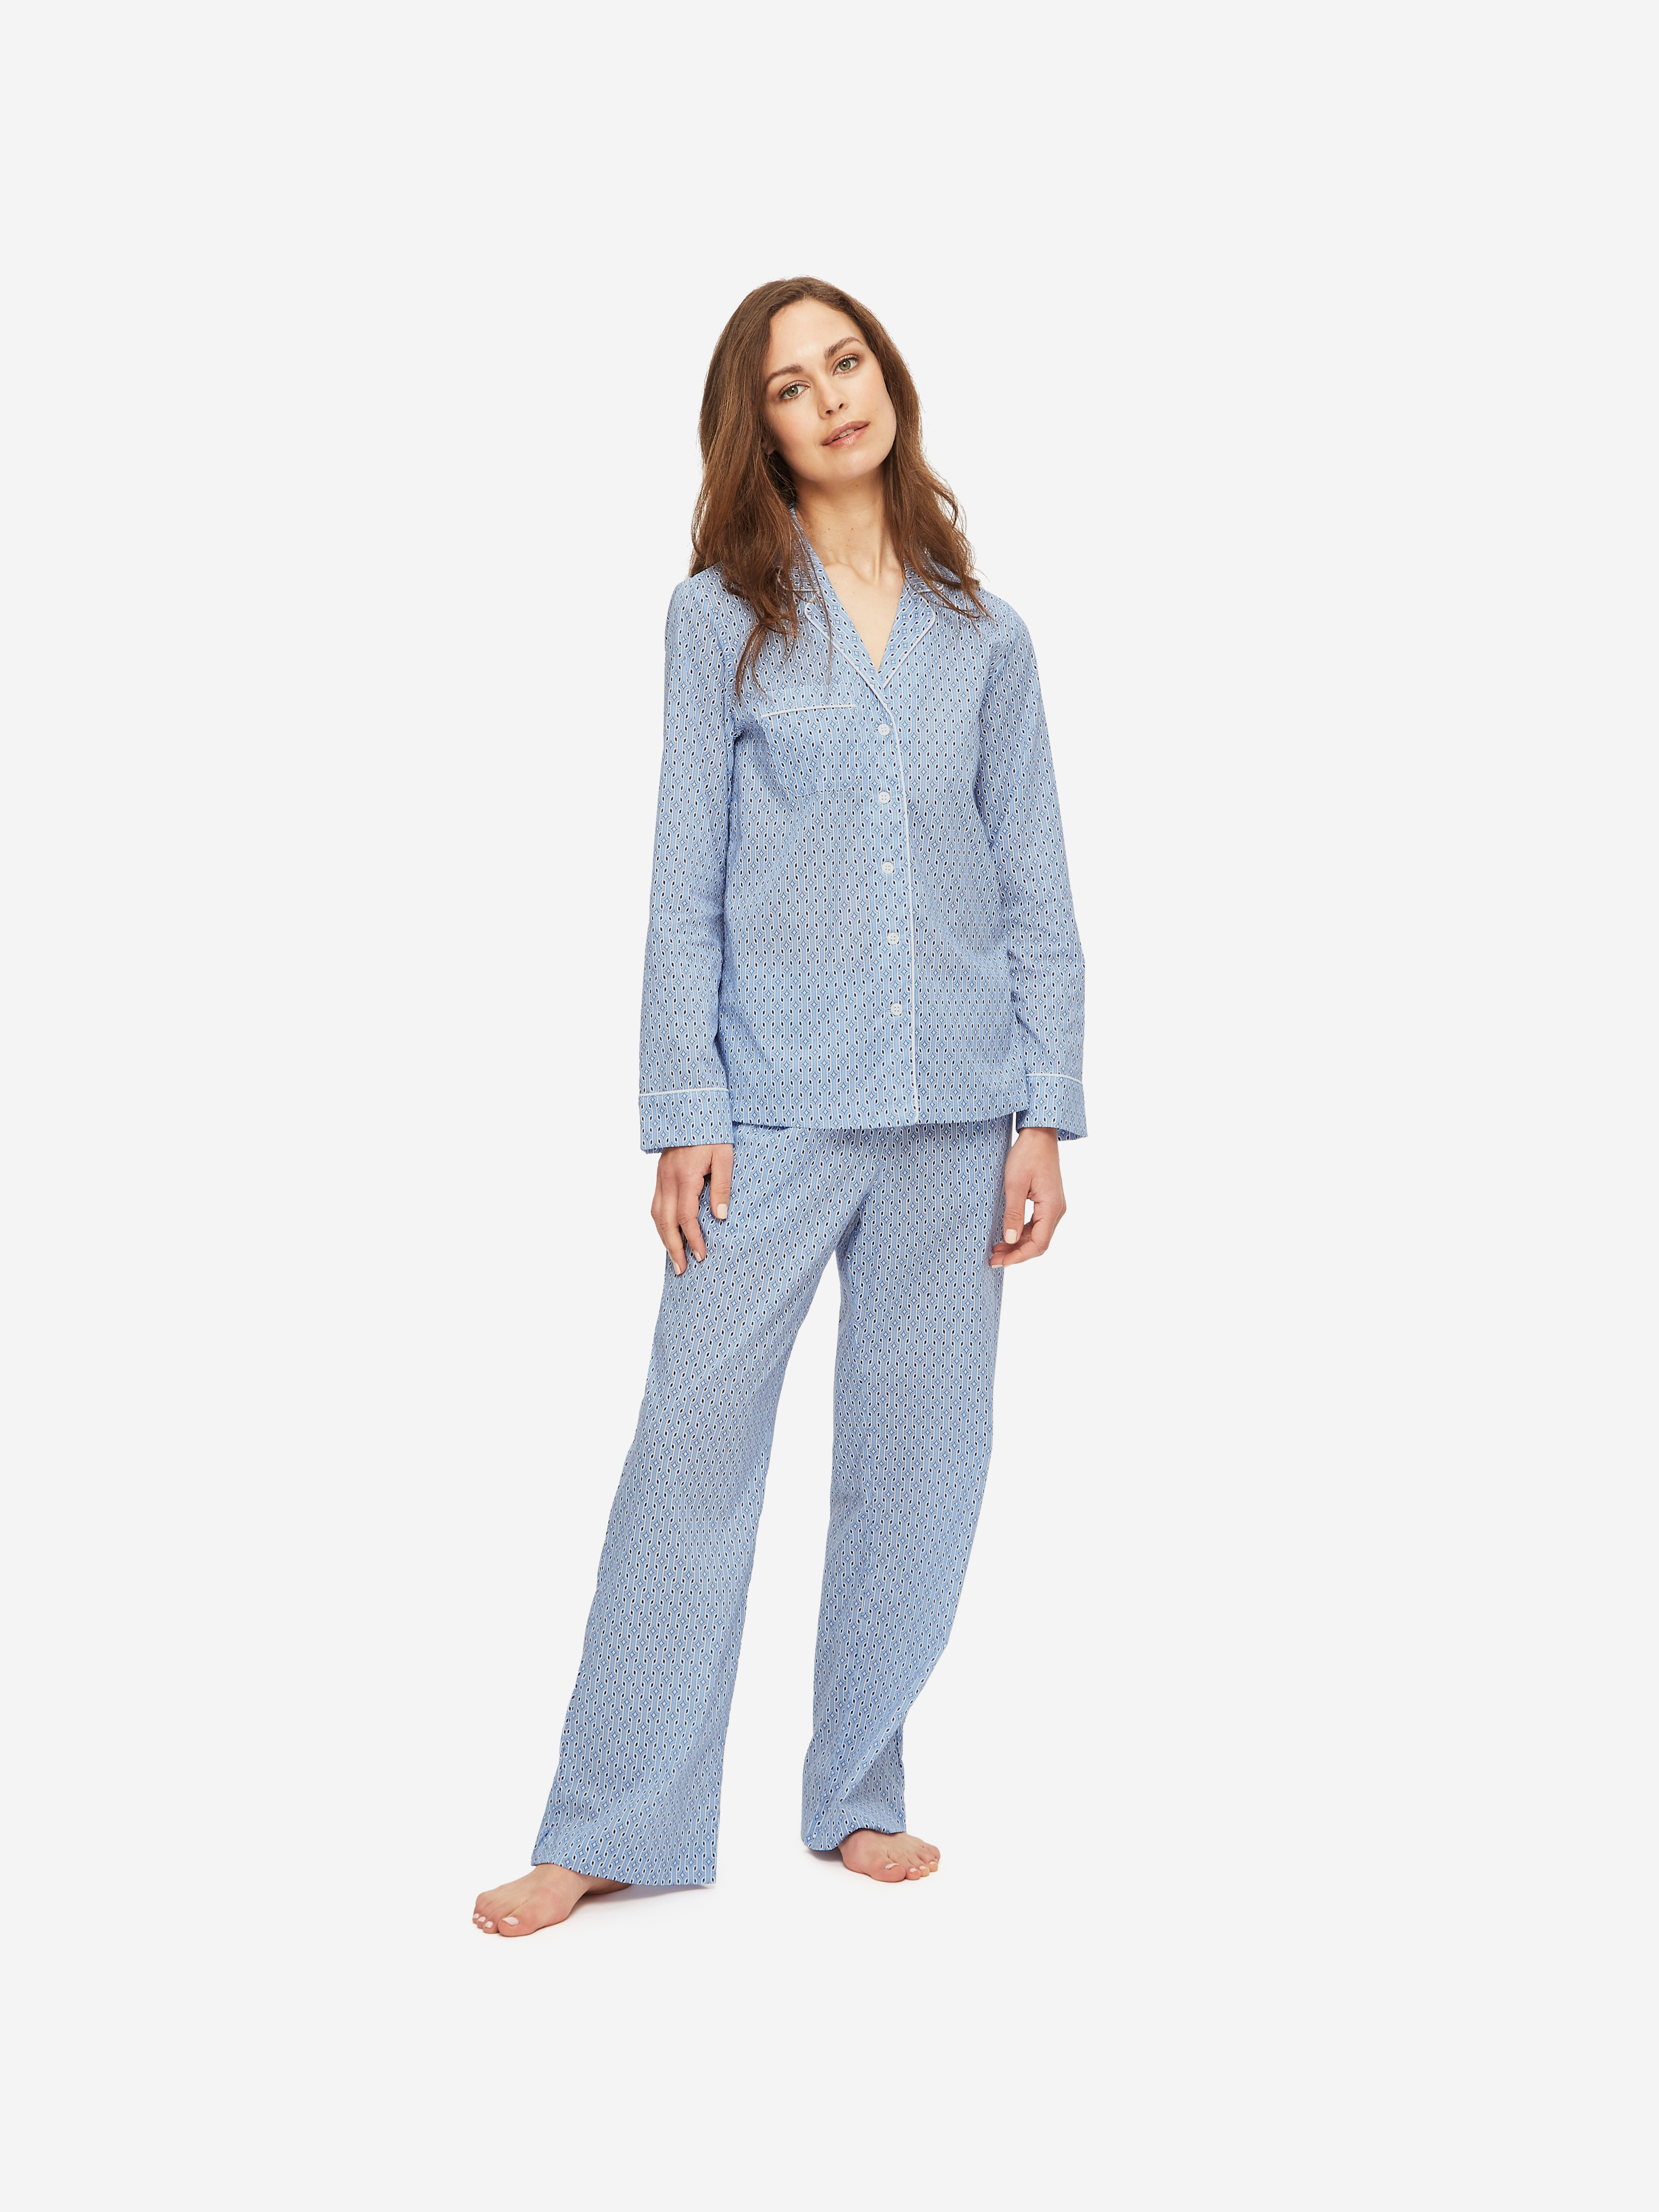 Kelburn 20 Brushed Cotton Multi Women's Pyjamas